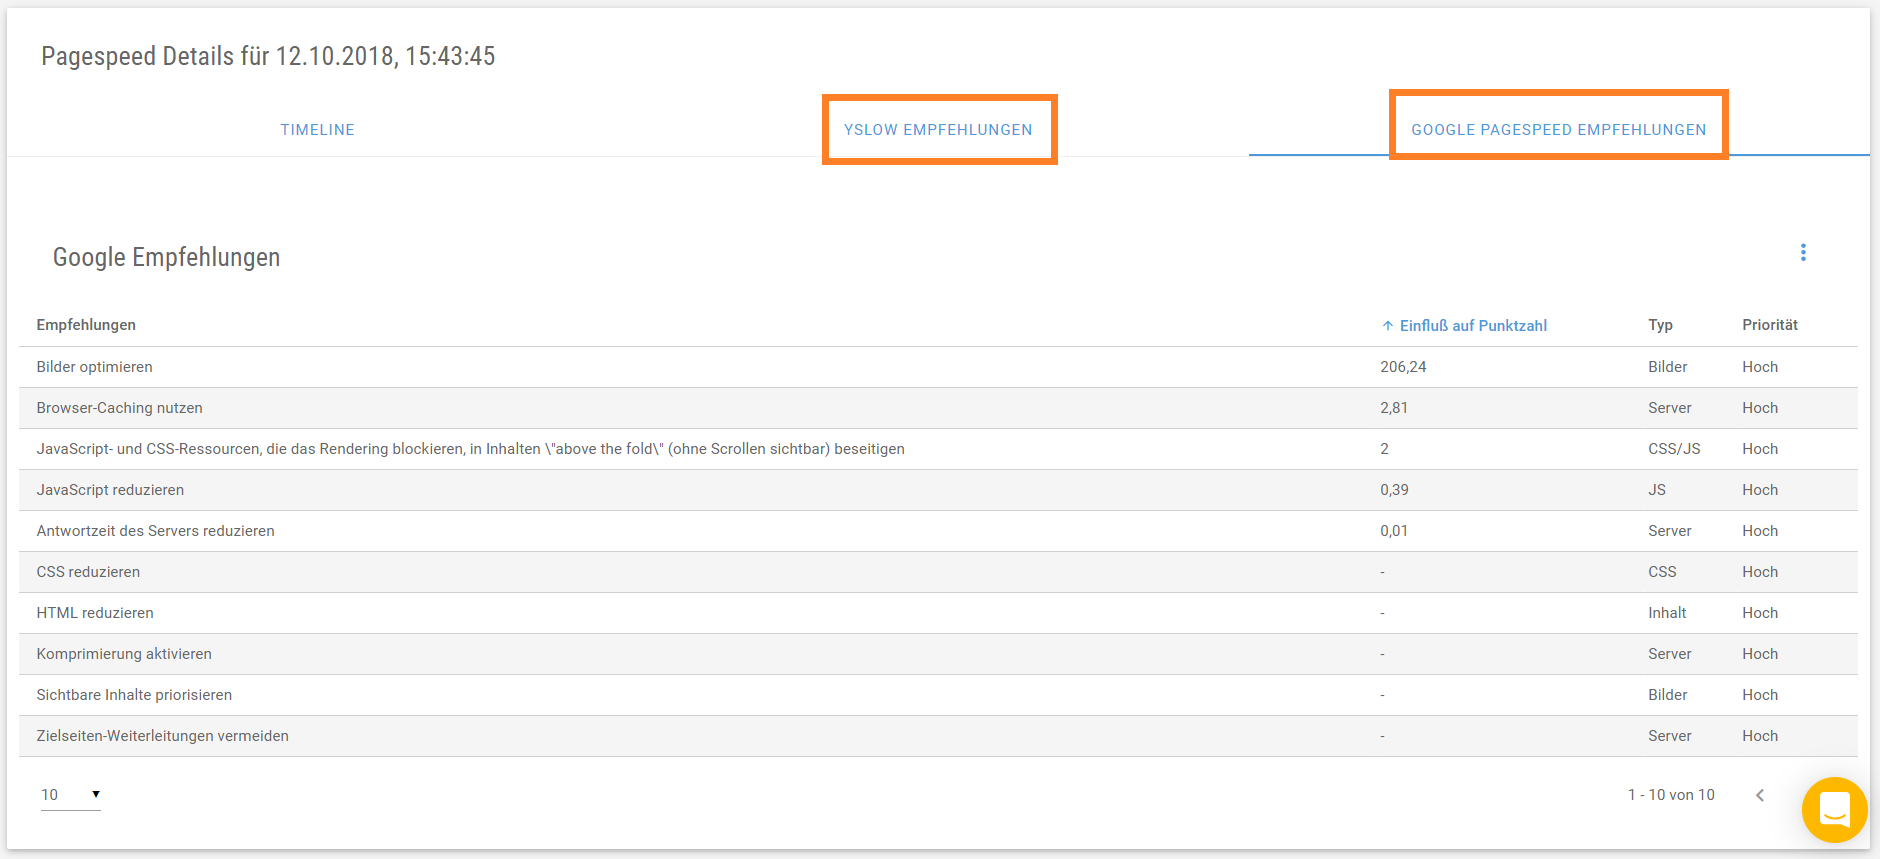 Screenshot der Pagespeed Analyse: YSLOW und Google Pagespeed Empfehlungen